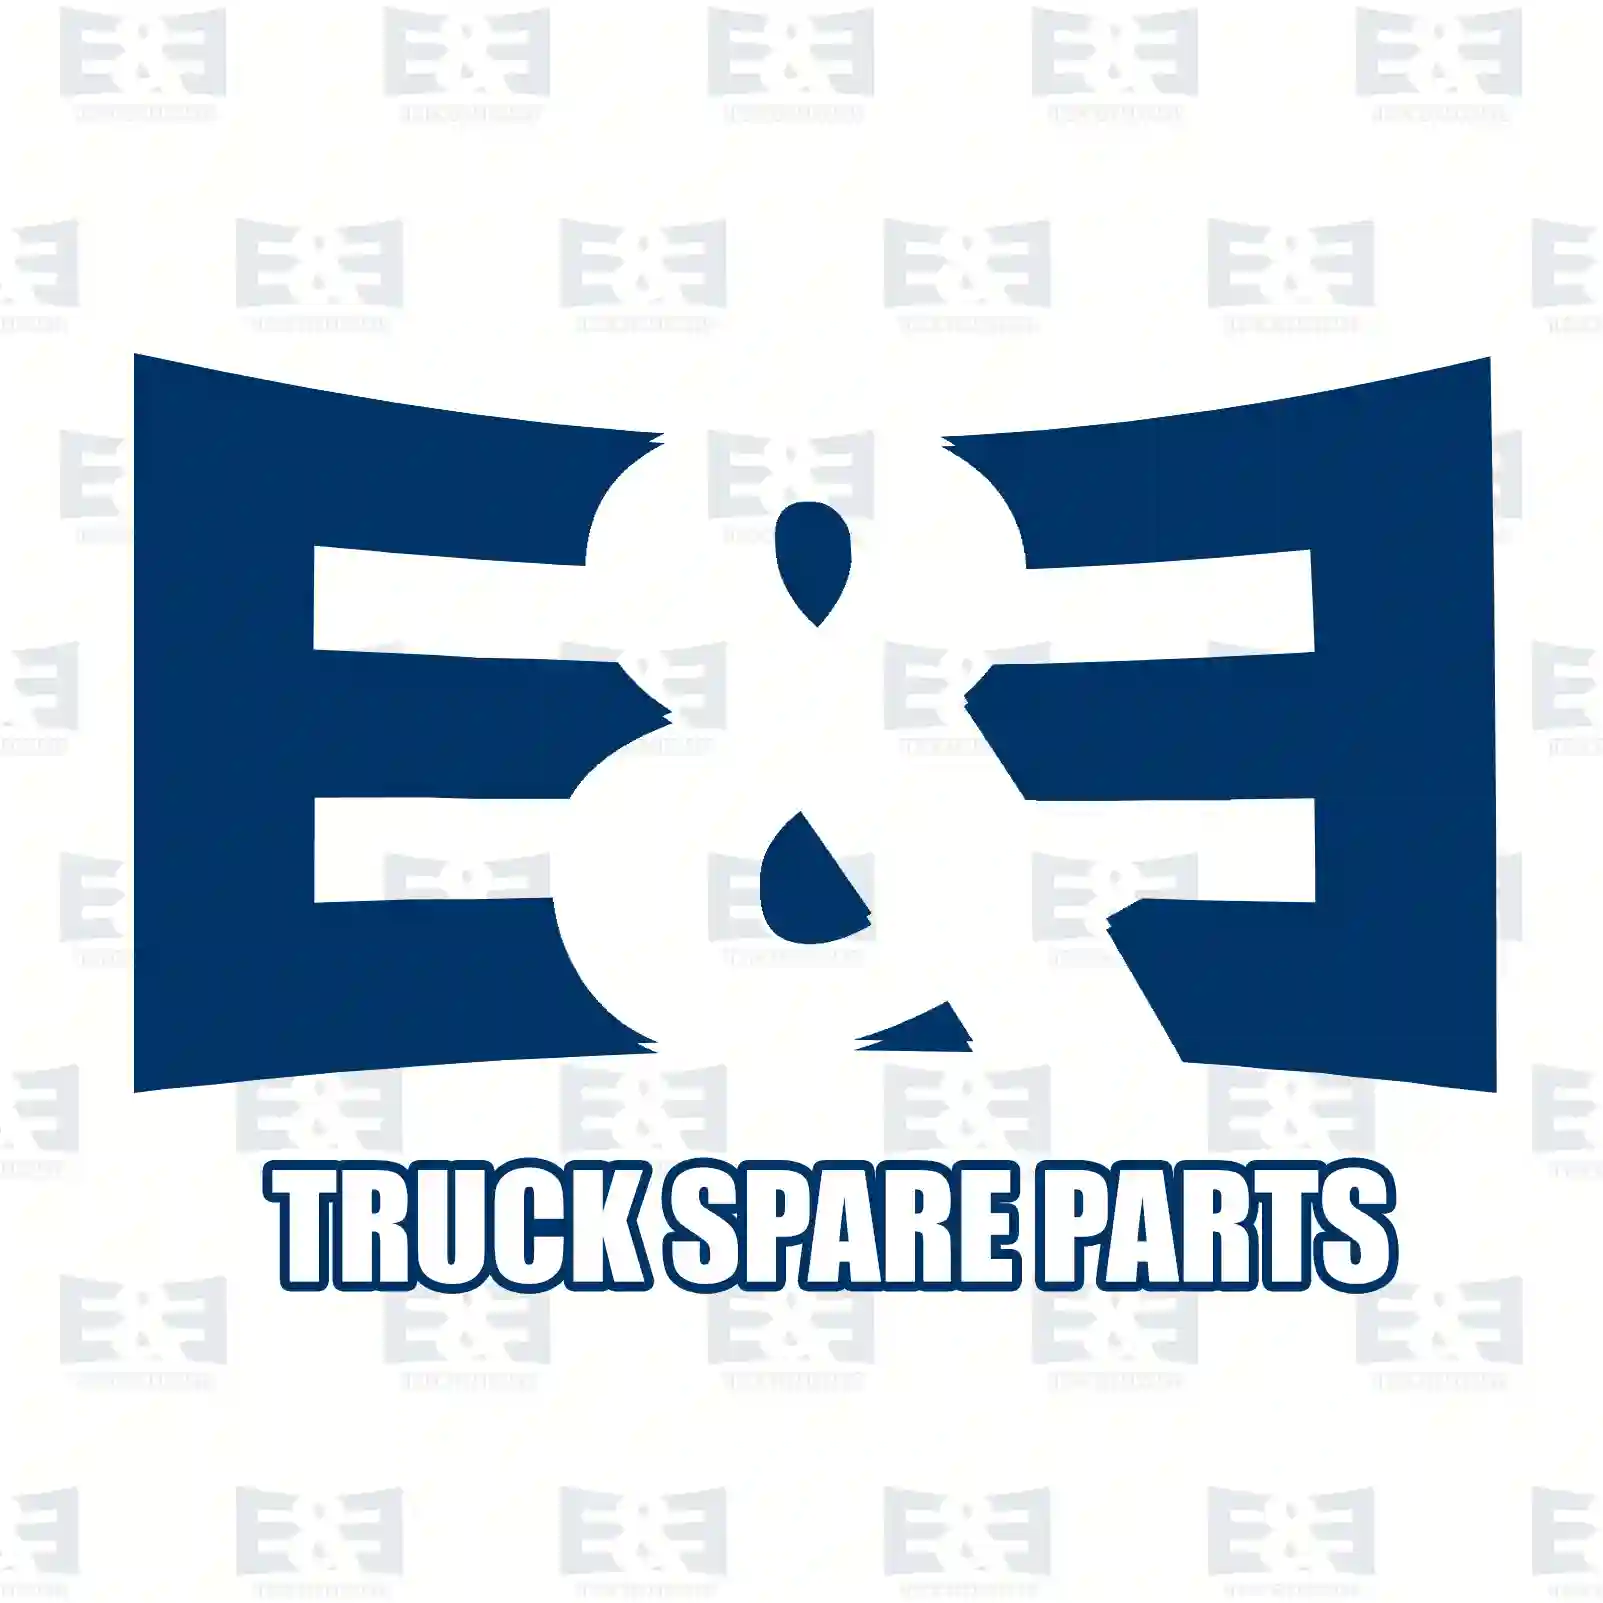  Ball caster, shifting valve || E&E Truck Spare Parts | Truck Spare Parts, Auotomotive Spare Parts